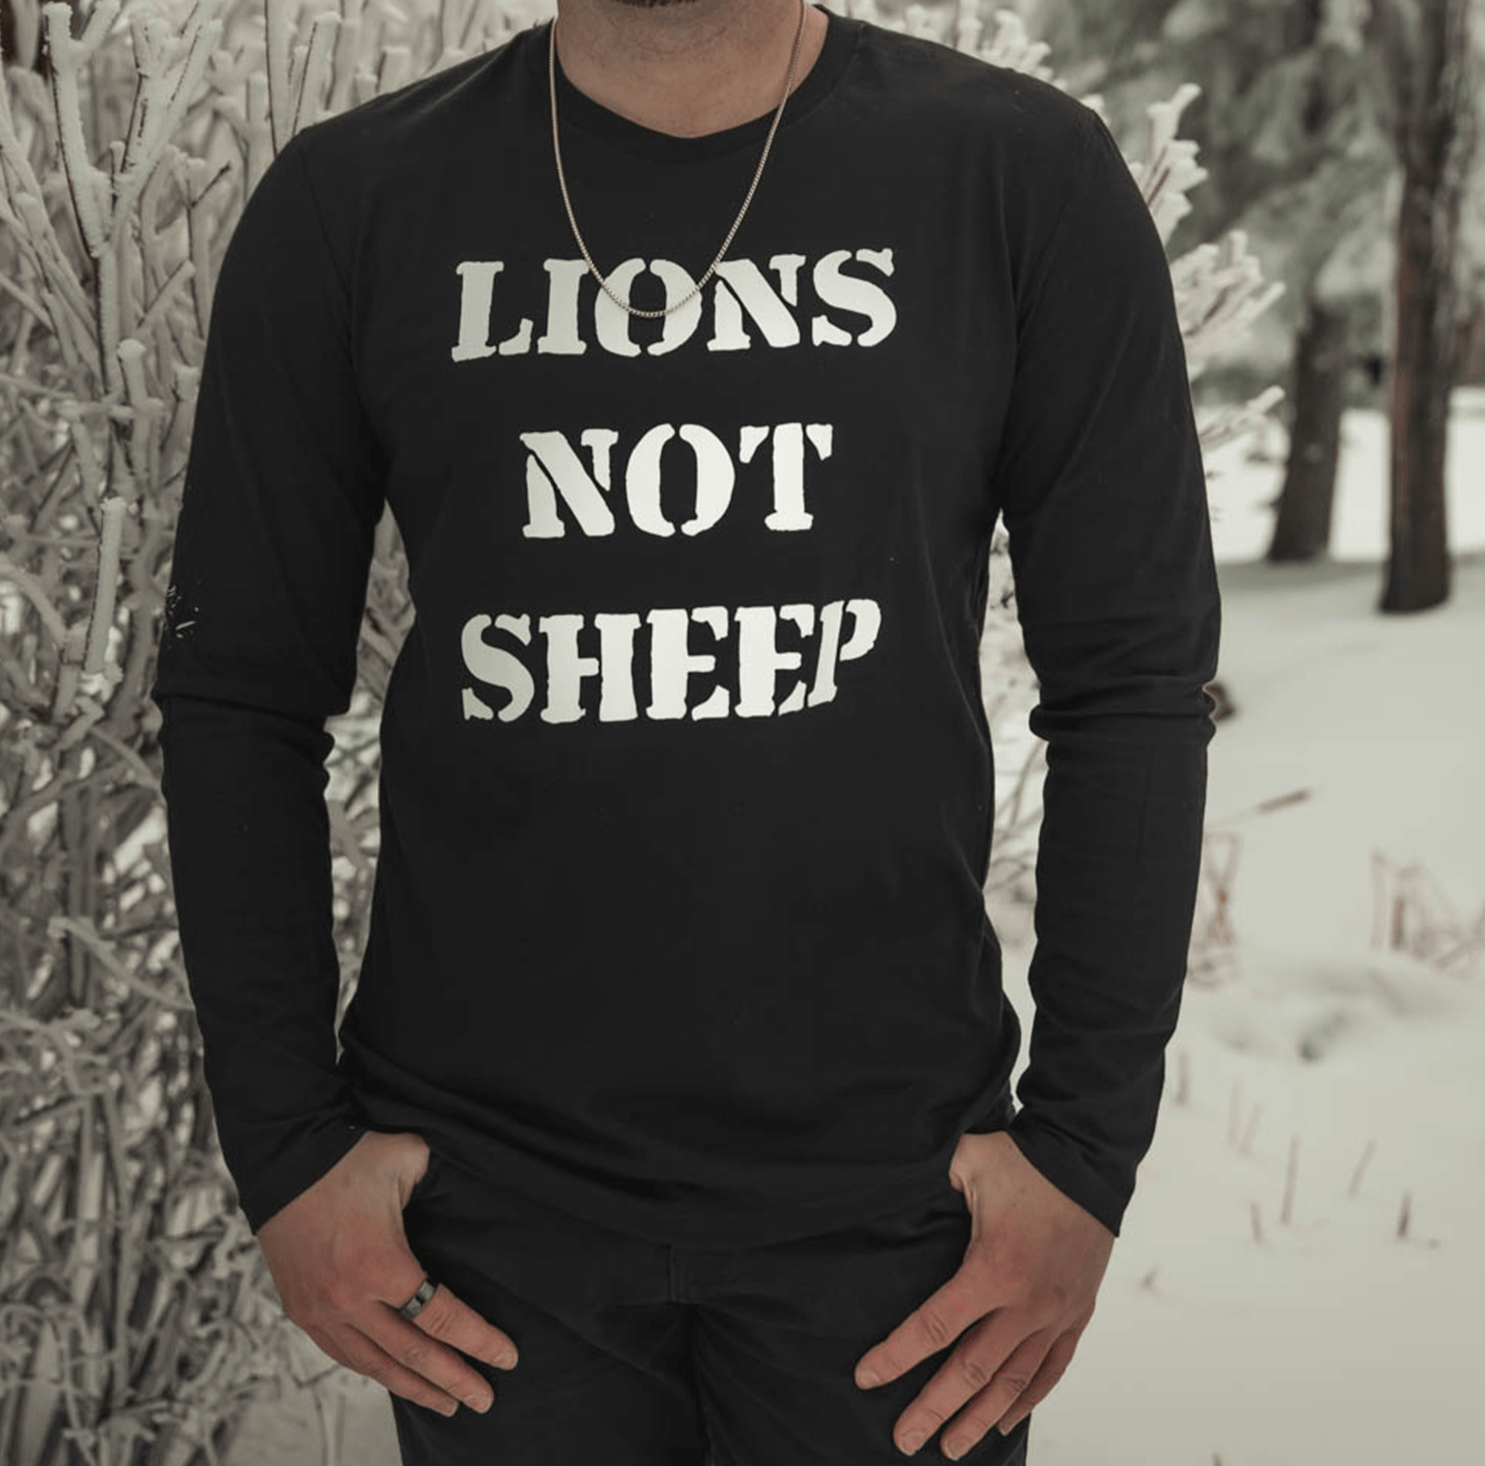 LIONS NOT SHEEP OG Unisex Long Sleeve Shirt - Lions Not Sheep ®